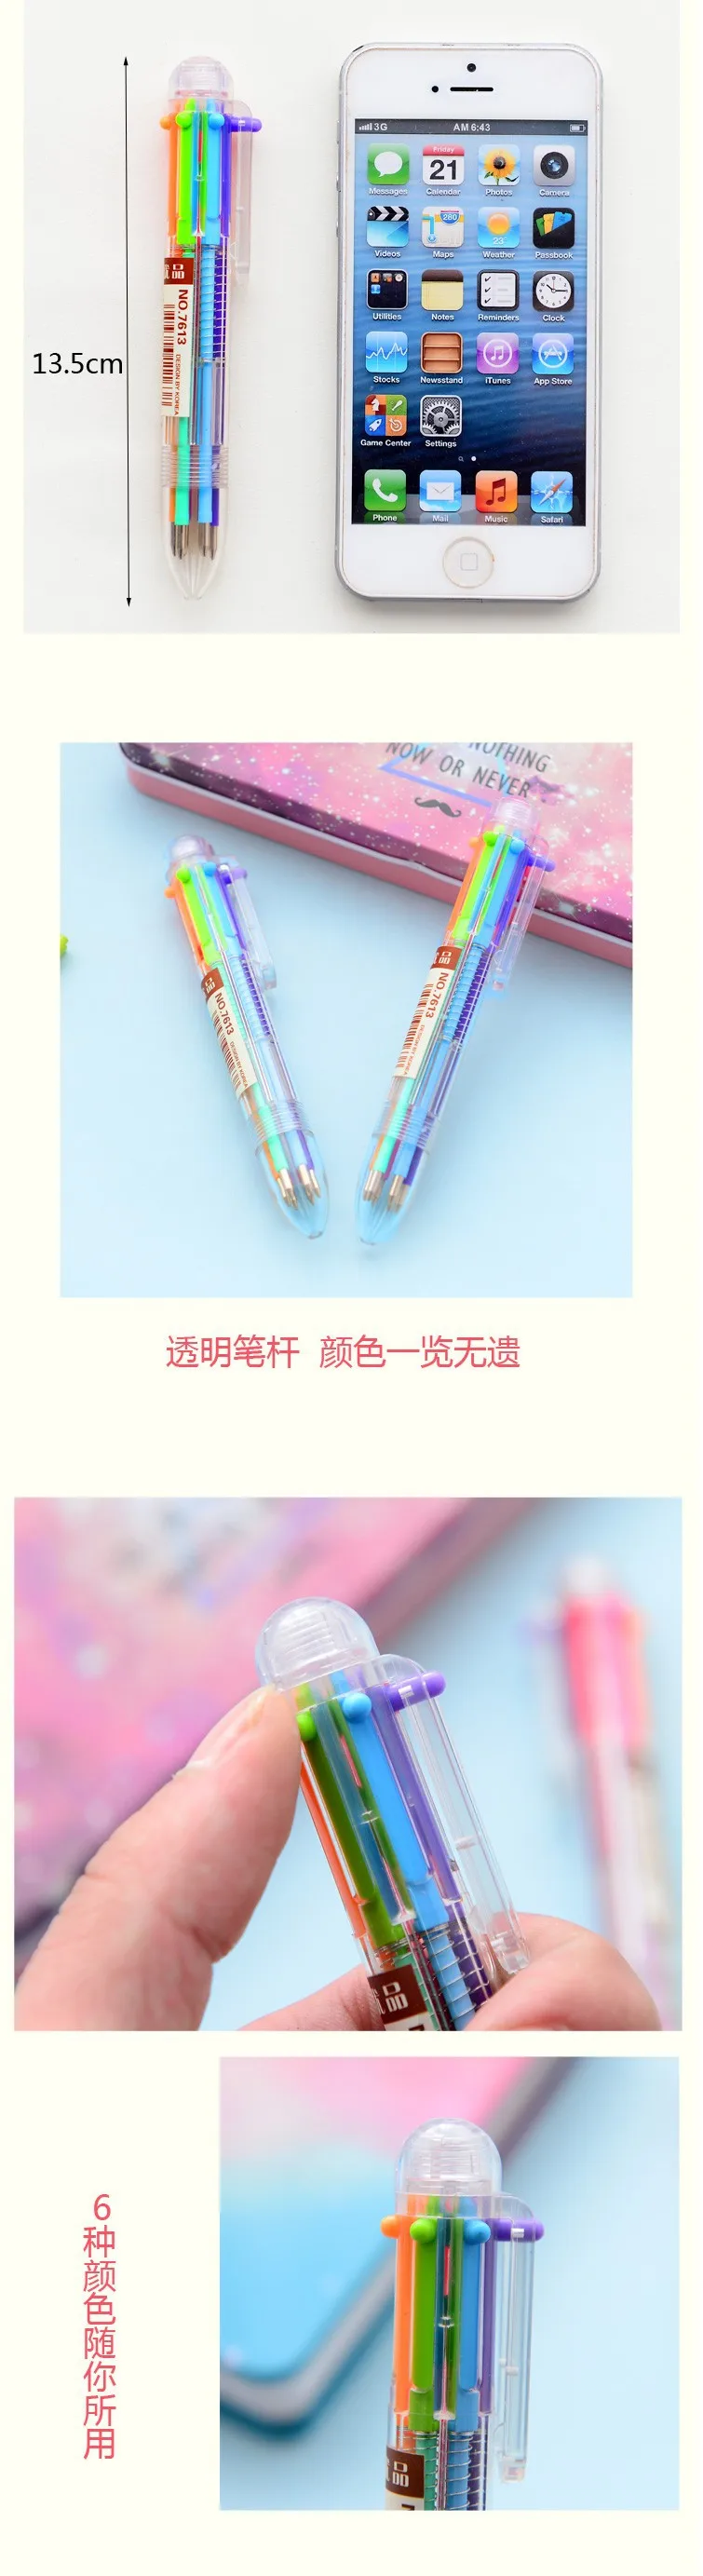 6 цвета переменчивый выдвижной написание канцелярские многоцветный Chromophous многофункциональный шариковая ручка школьные принадлежности